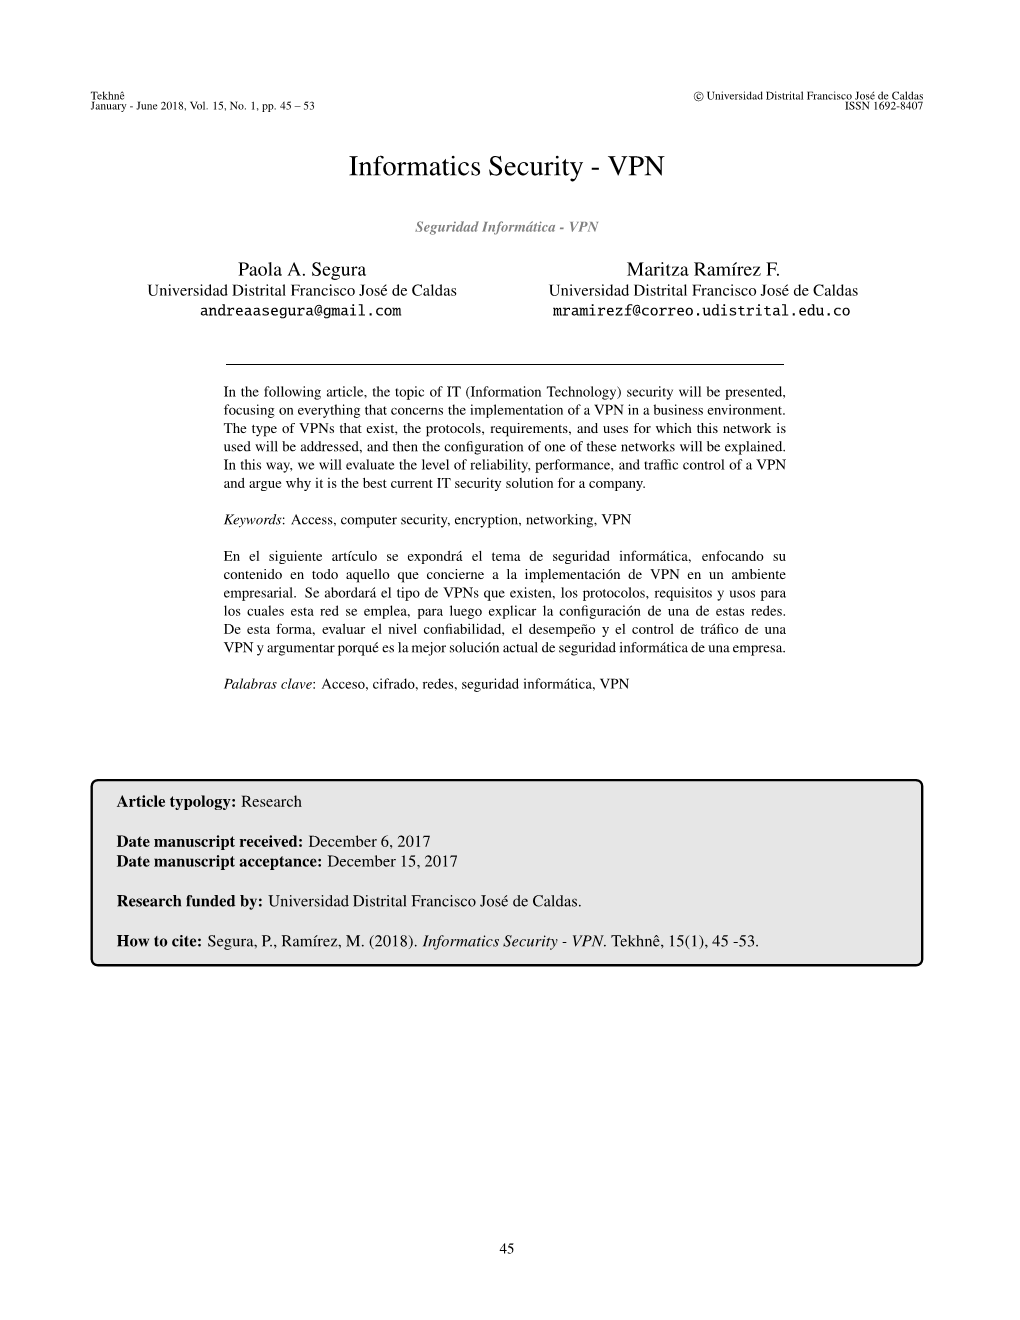 Informatics Security - VPN